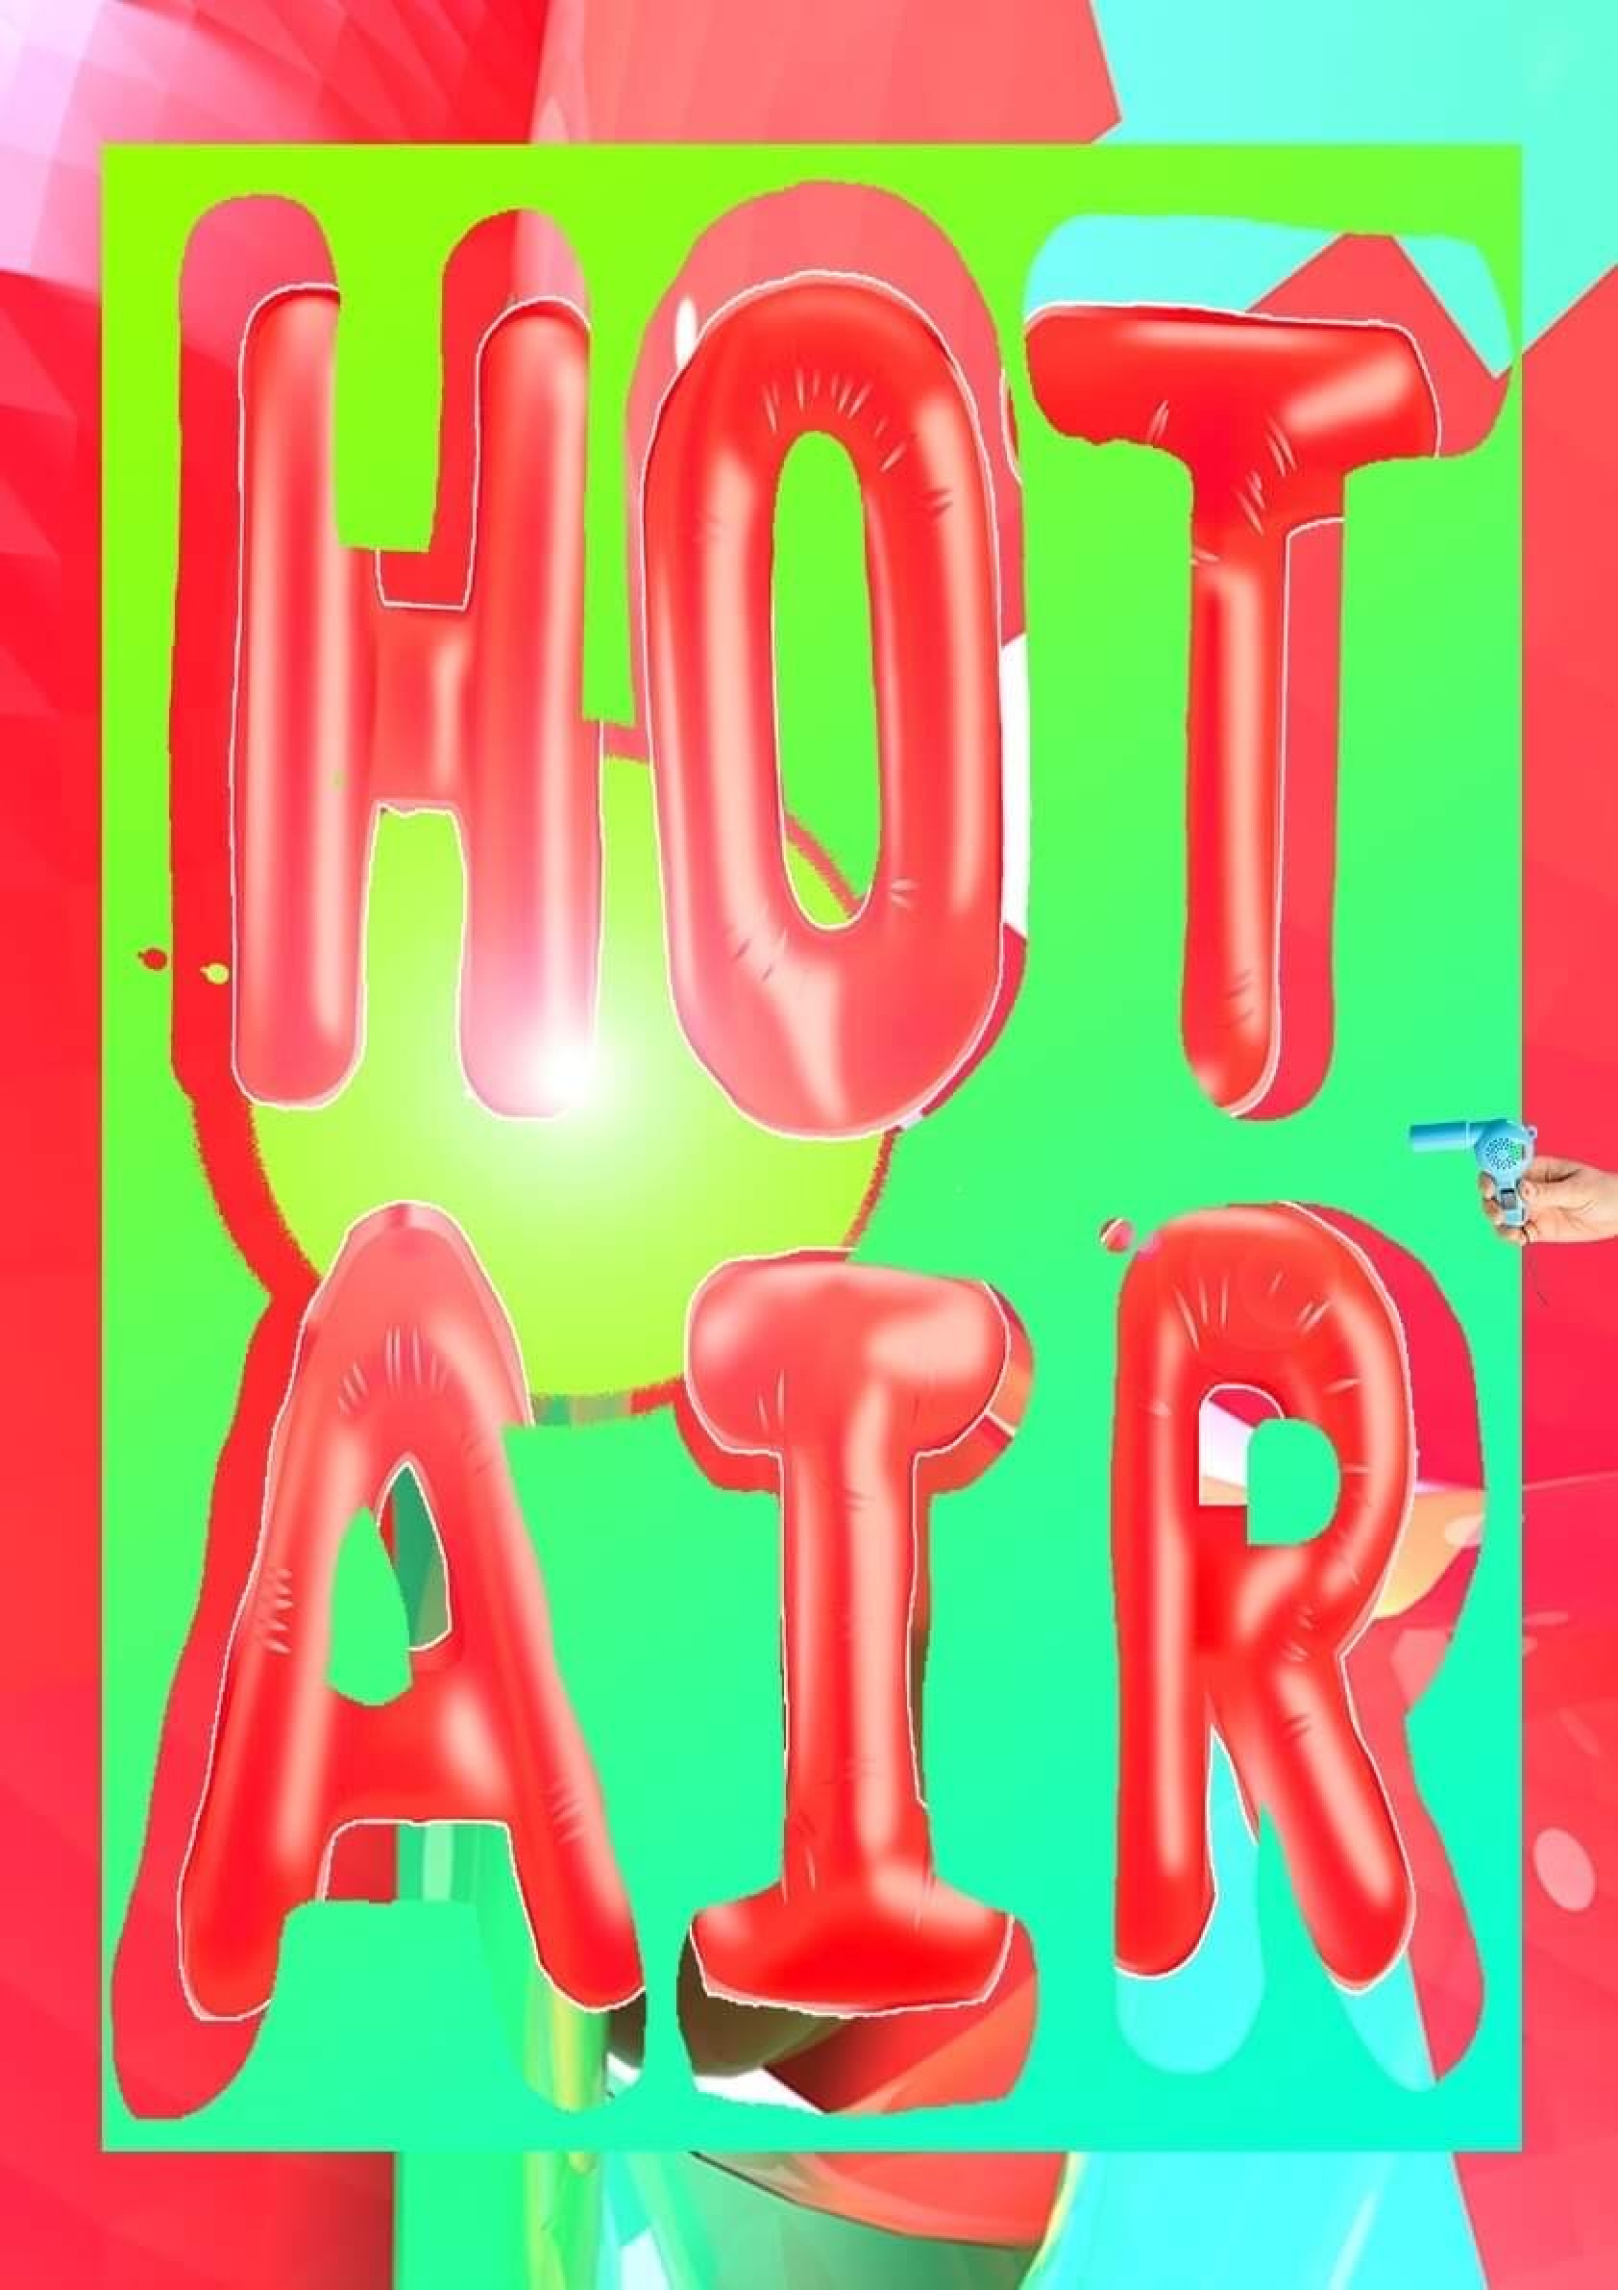 Hot Air image